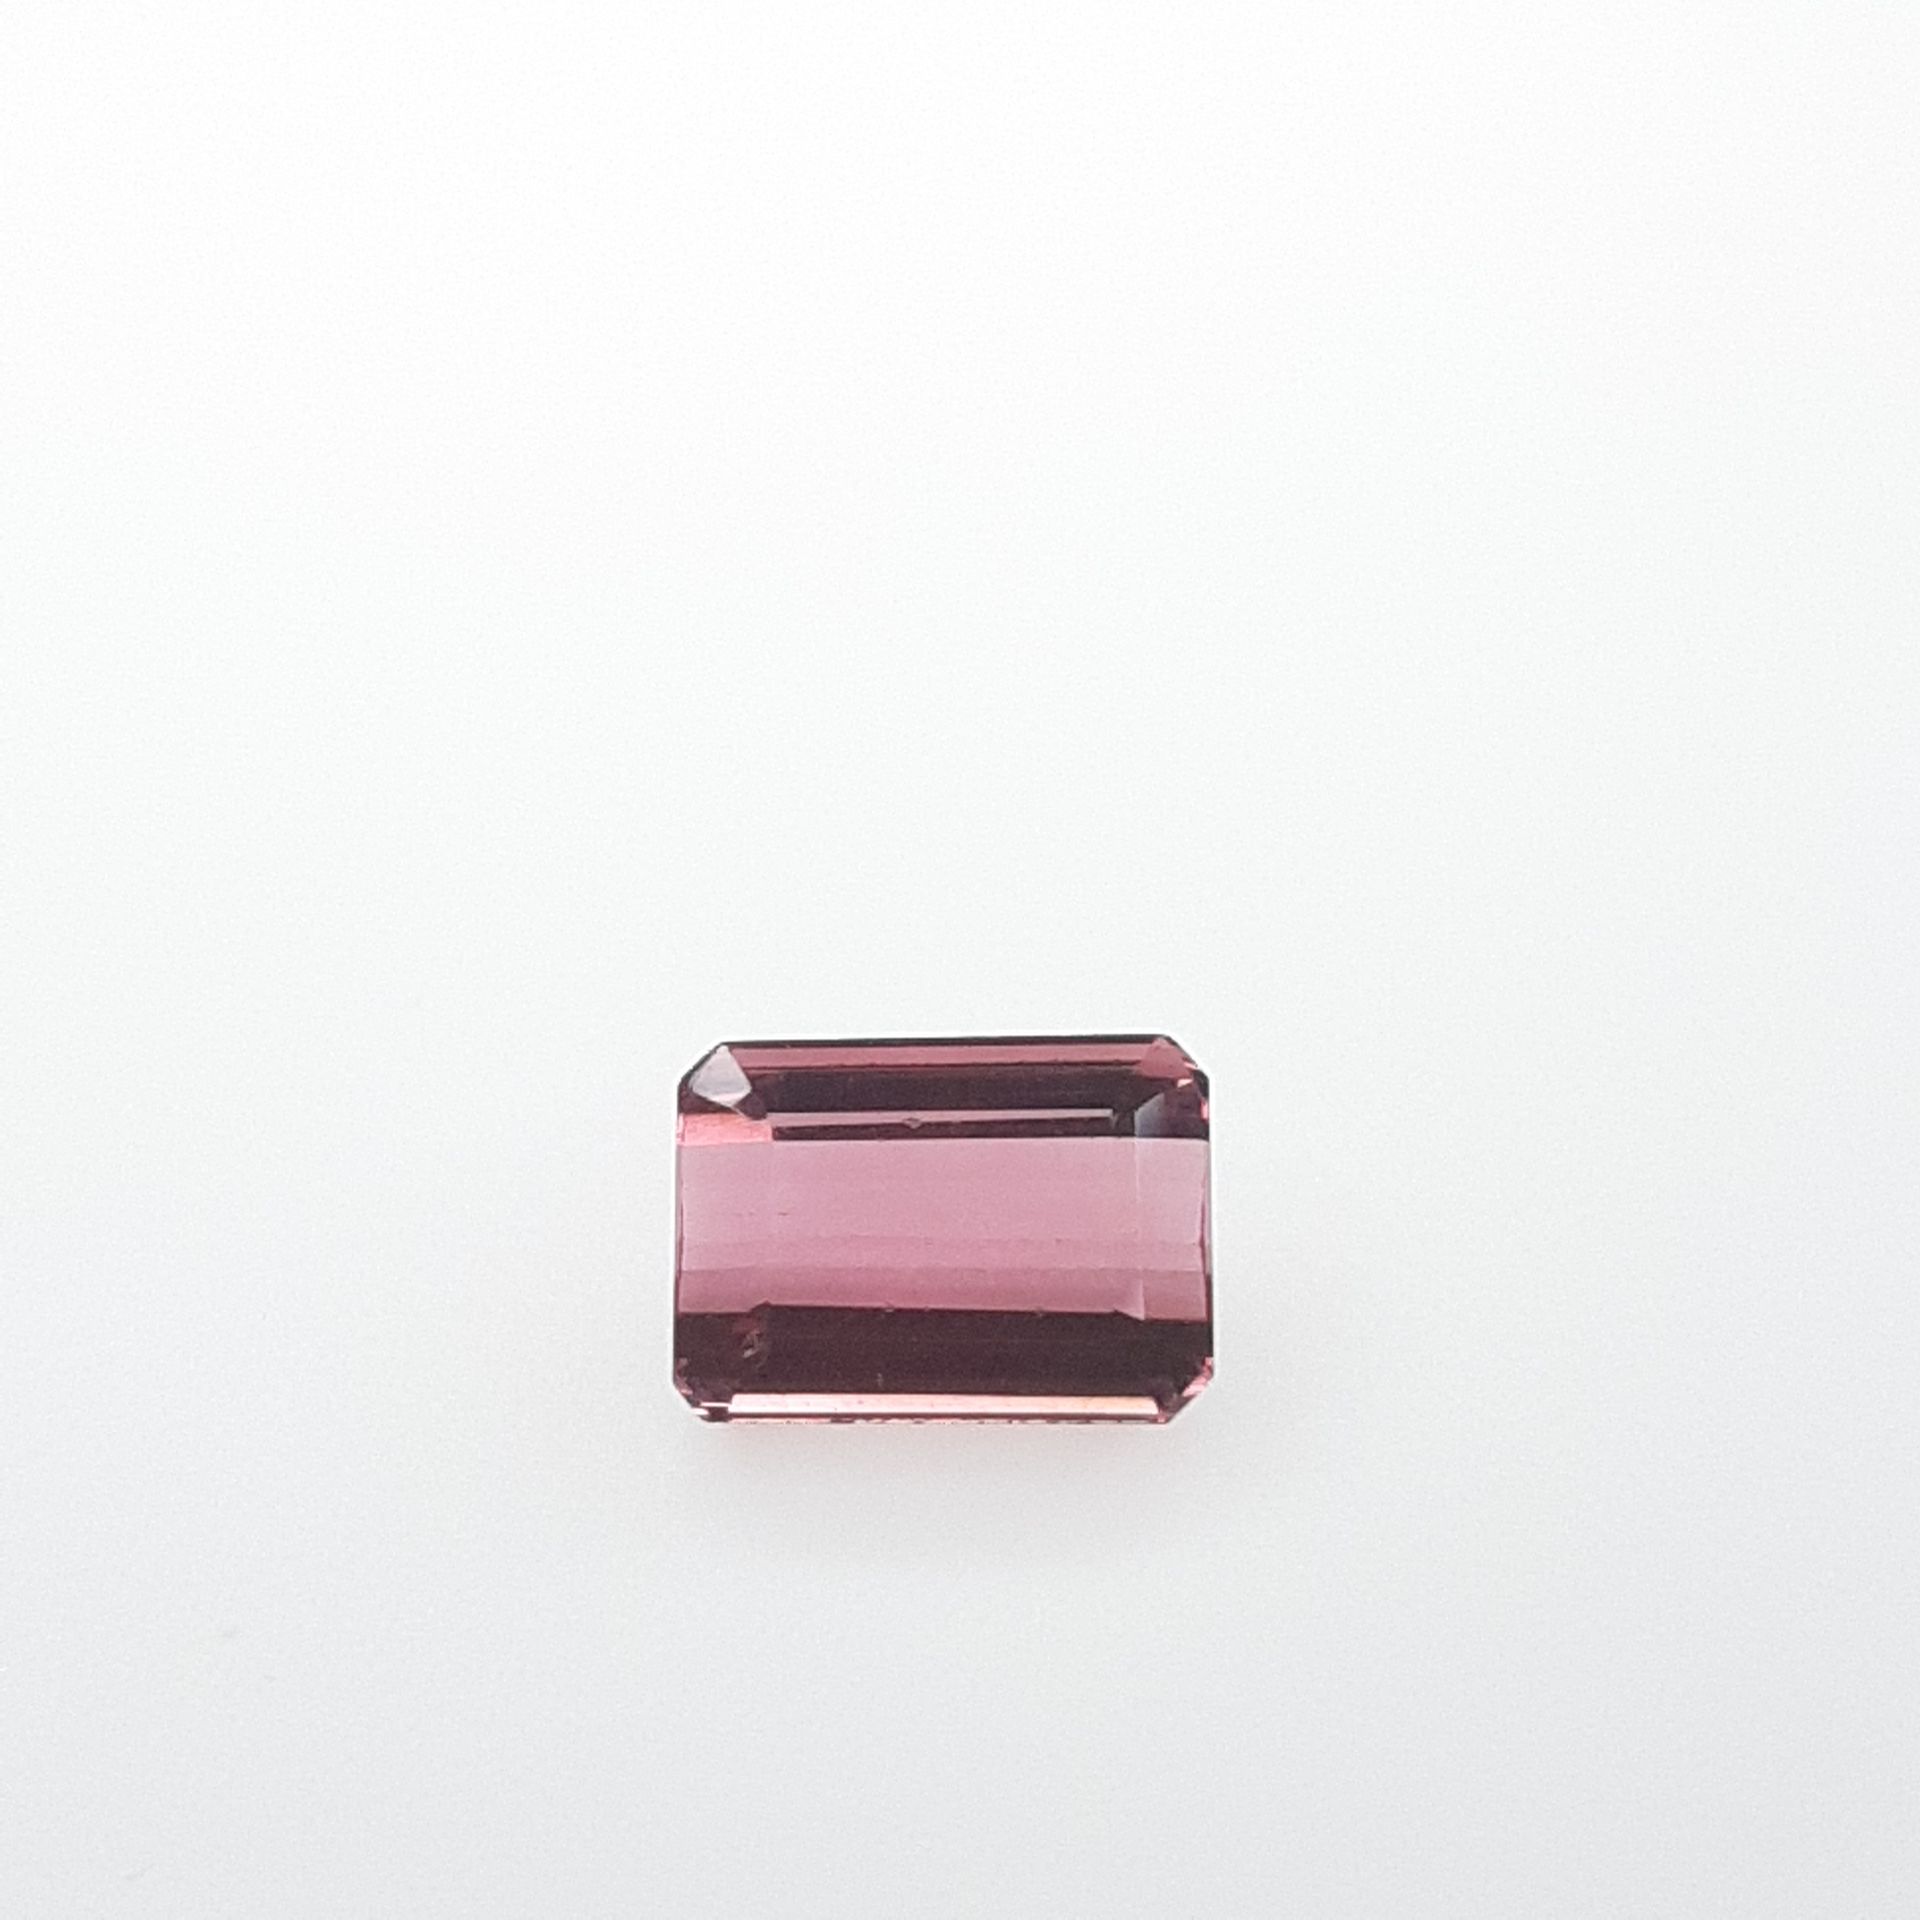 Rubellite - BRESIL - 3.95 cts RUBELITA - De Brasil - Color rojo rosado - Tamaño &hellip;